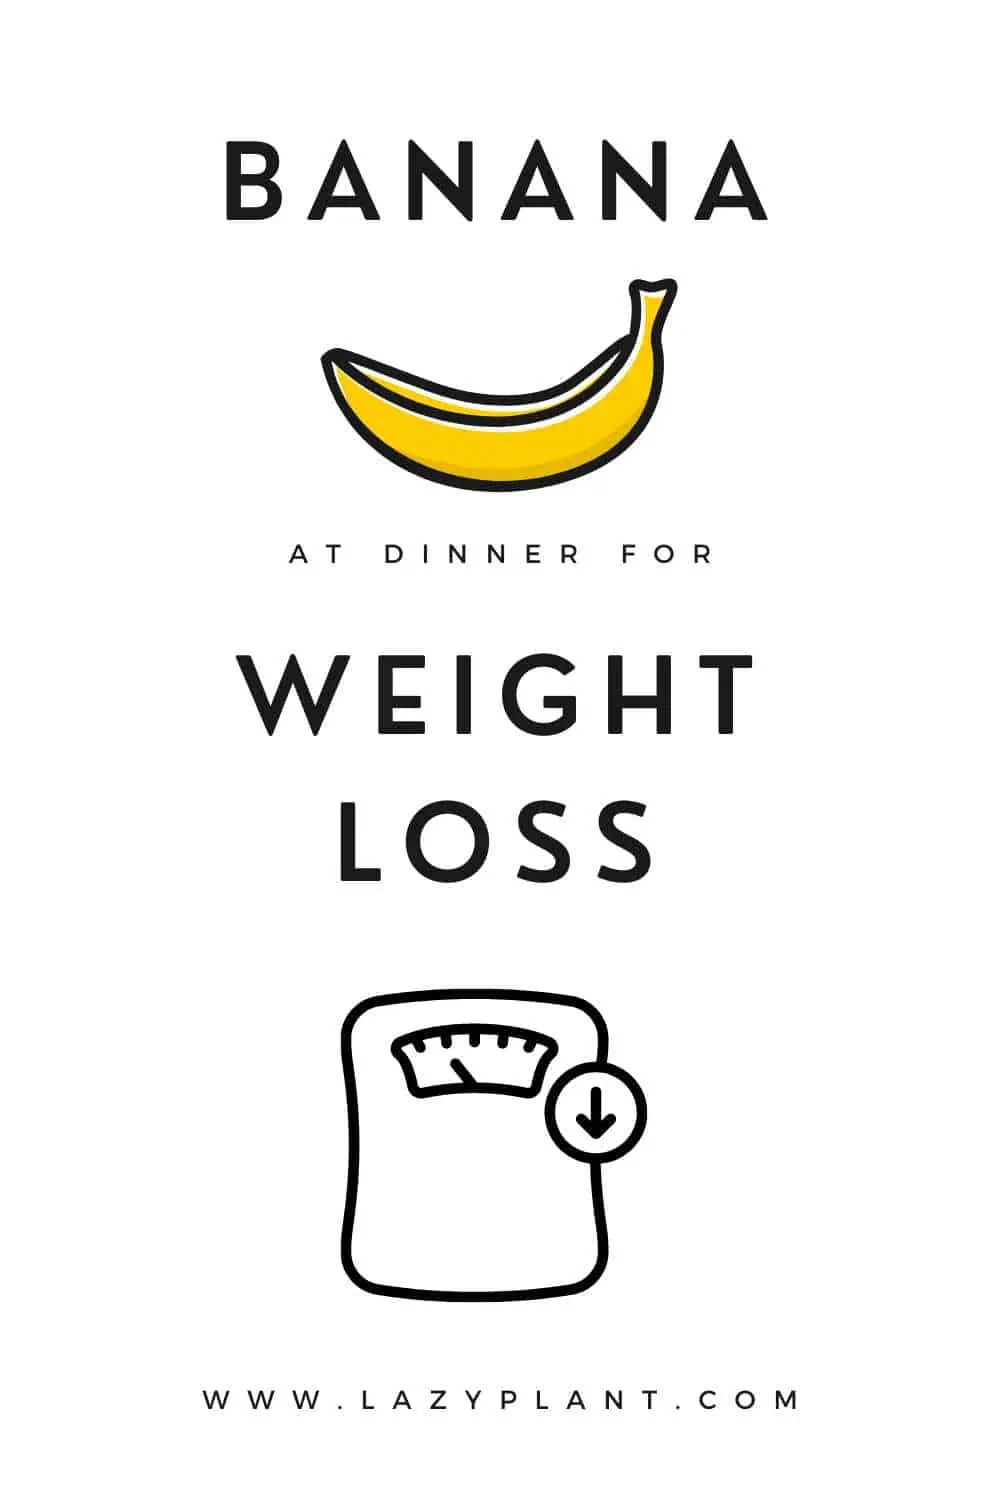 Eating a banana late at night won't make you gain weight.